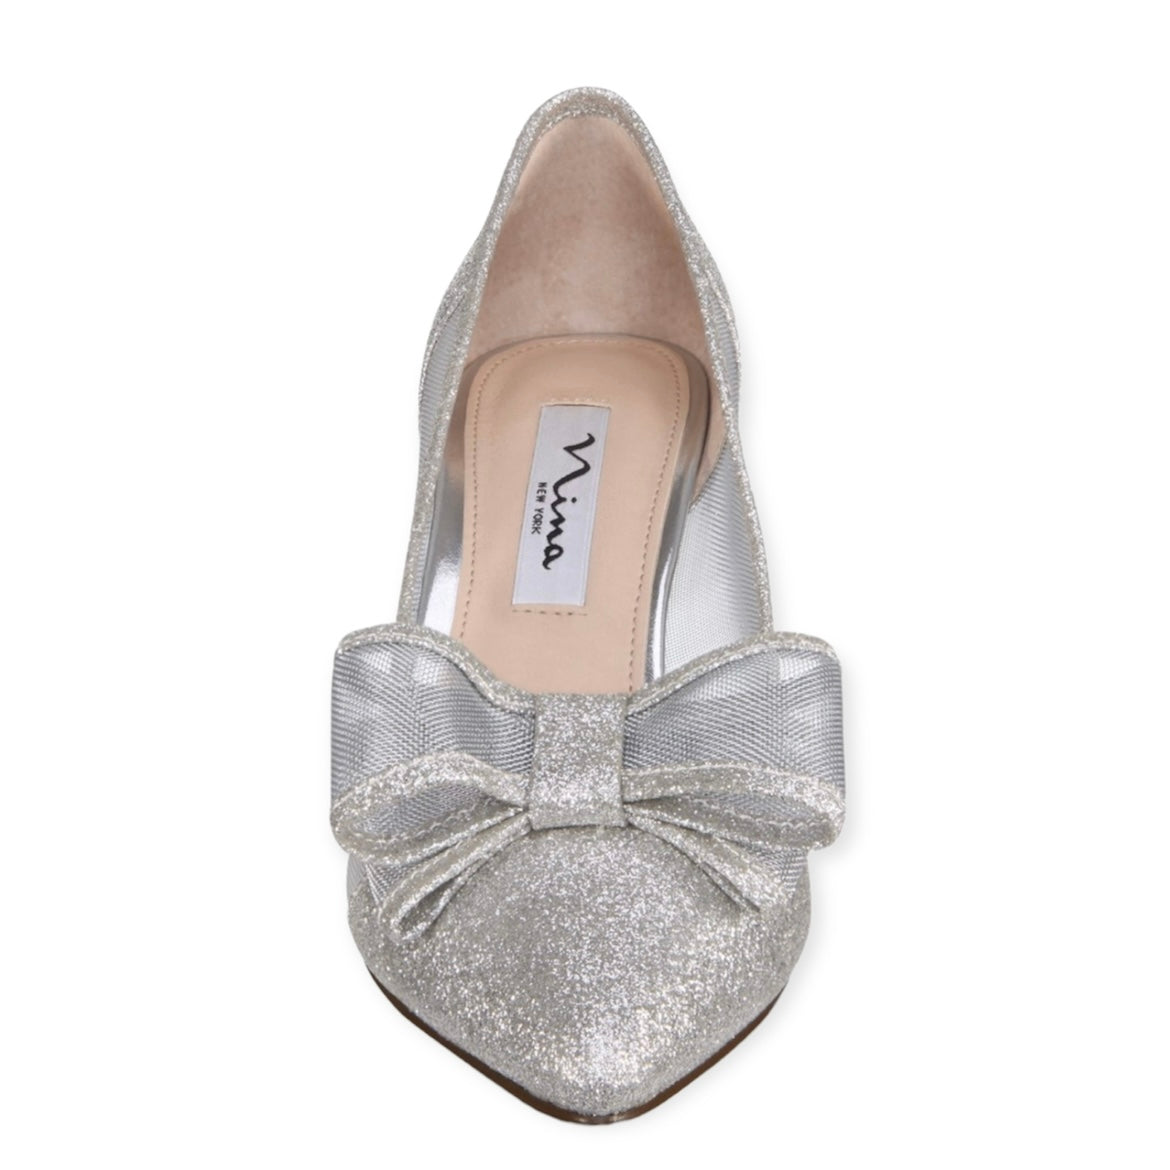 BIANCA Glitter Silver Kitten Heel Pointed Toe Women's Pumps Shoes